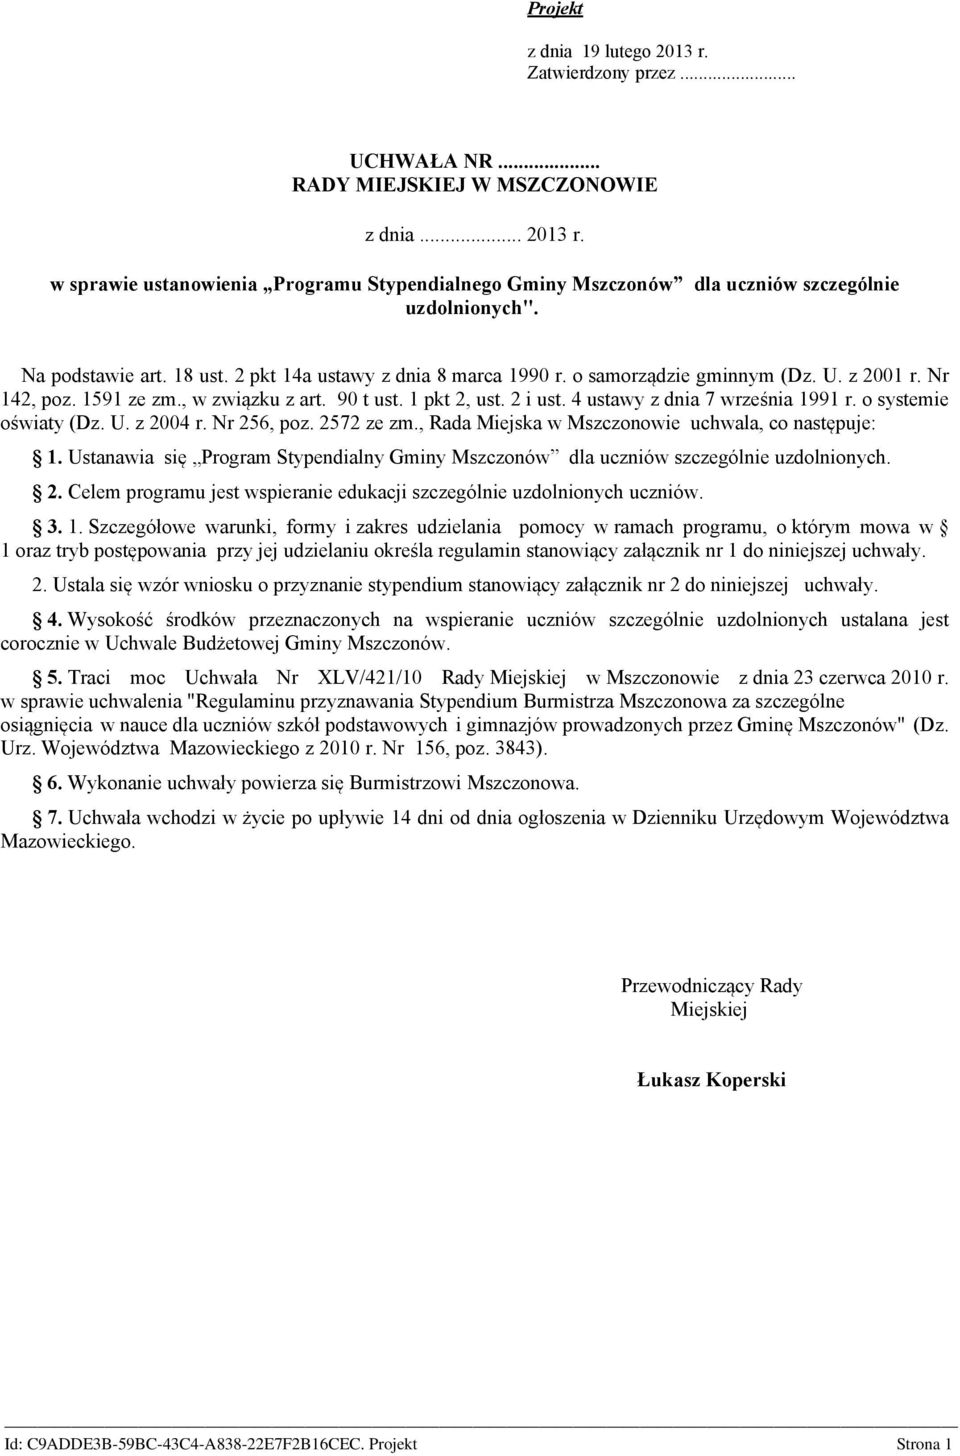 4 ustawy z dnia 7 września 1991 r. o systemie oświaty (Dz. U. z 2004 r. Nr 256, poz. 2572 ze zm., Rada Miejska w Mszczonowie uchwala, co następuje: 1.